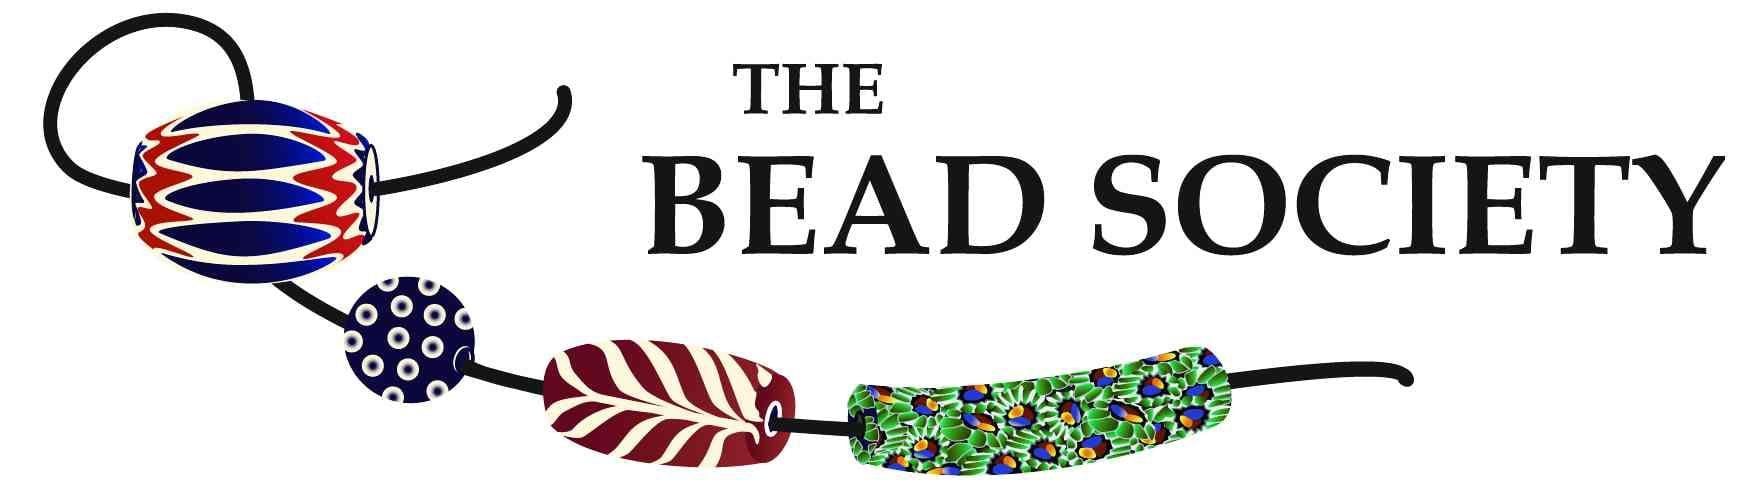 Bead Logo - The Bead Society